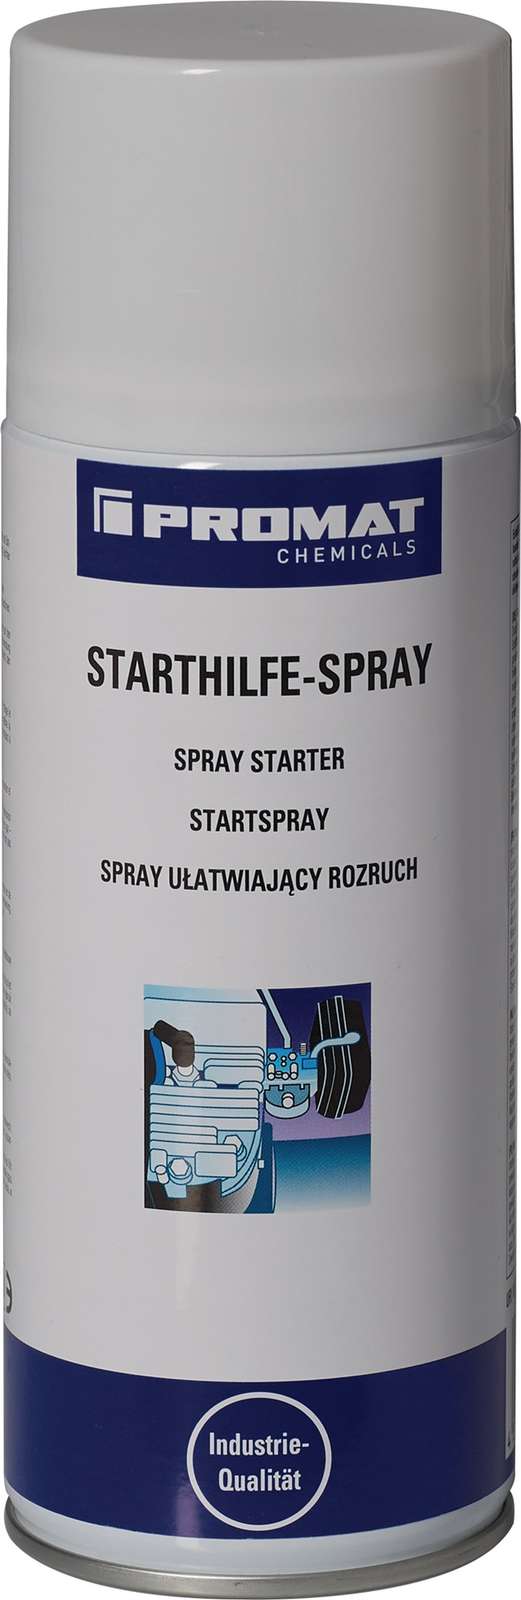 12 x Starthilfespray 400 ml Spraydose PROMAT CHEMICALS    Der Onlineshop für Werkzeuge, Industriebedarf,  Verbrauchsmaterial